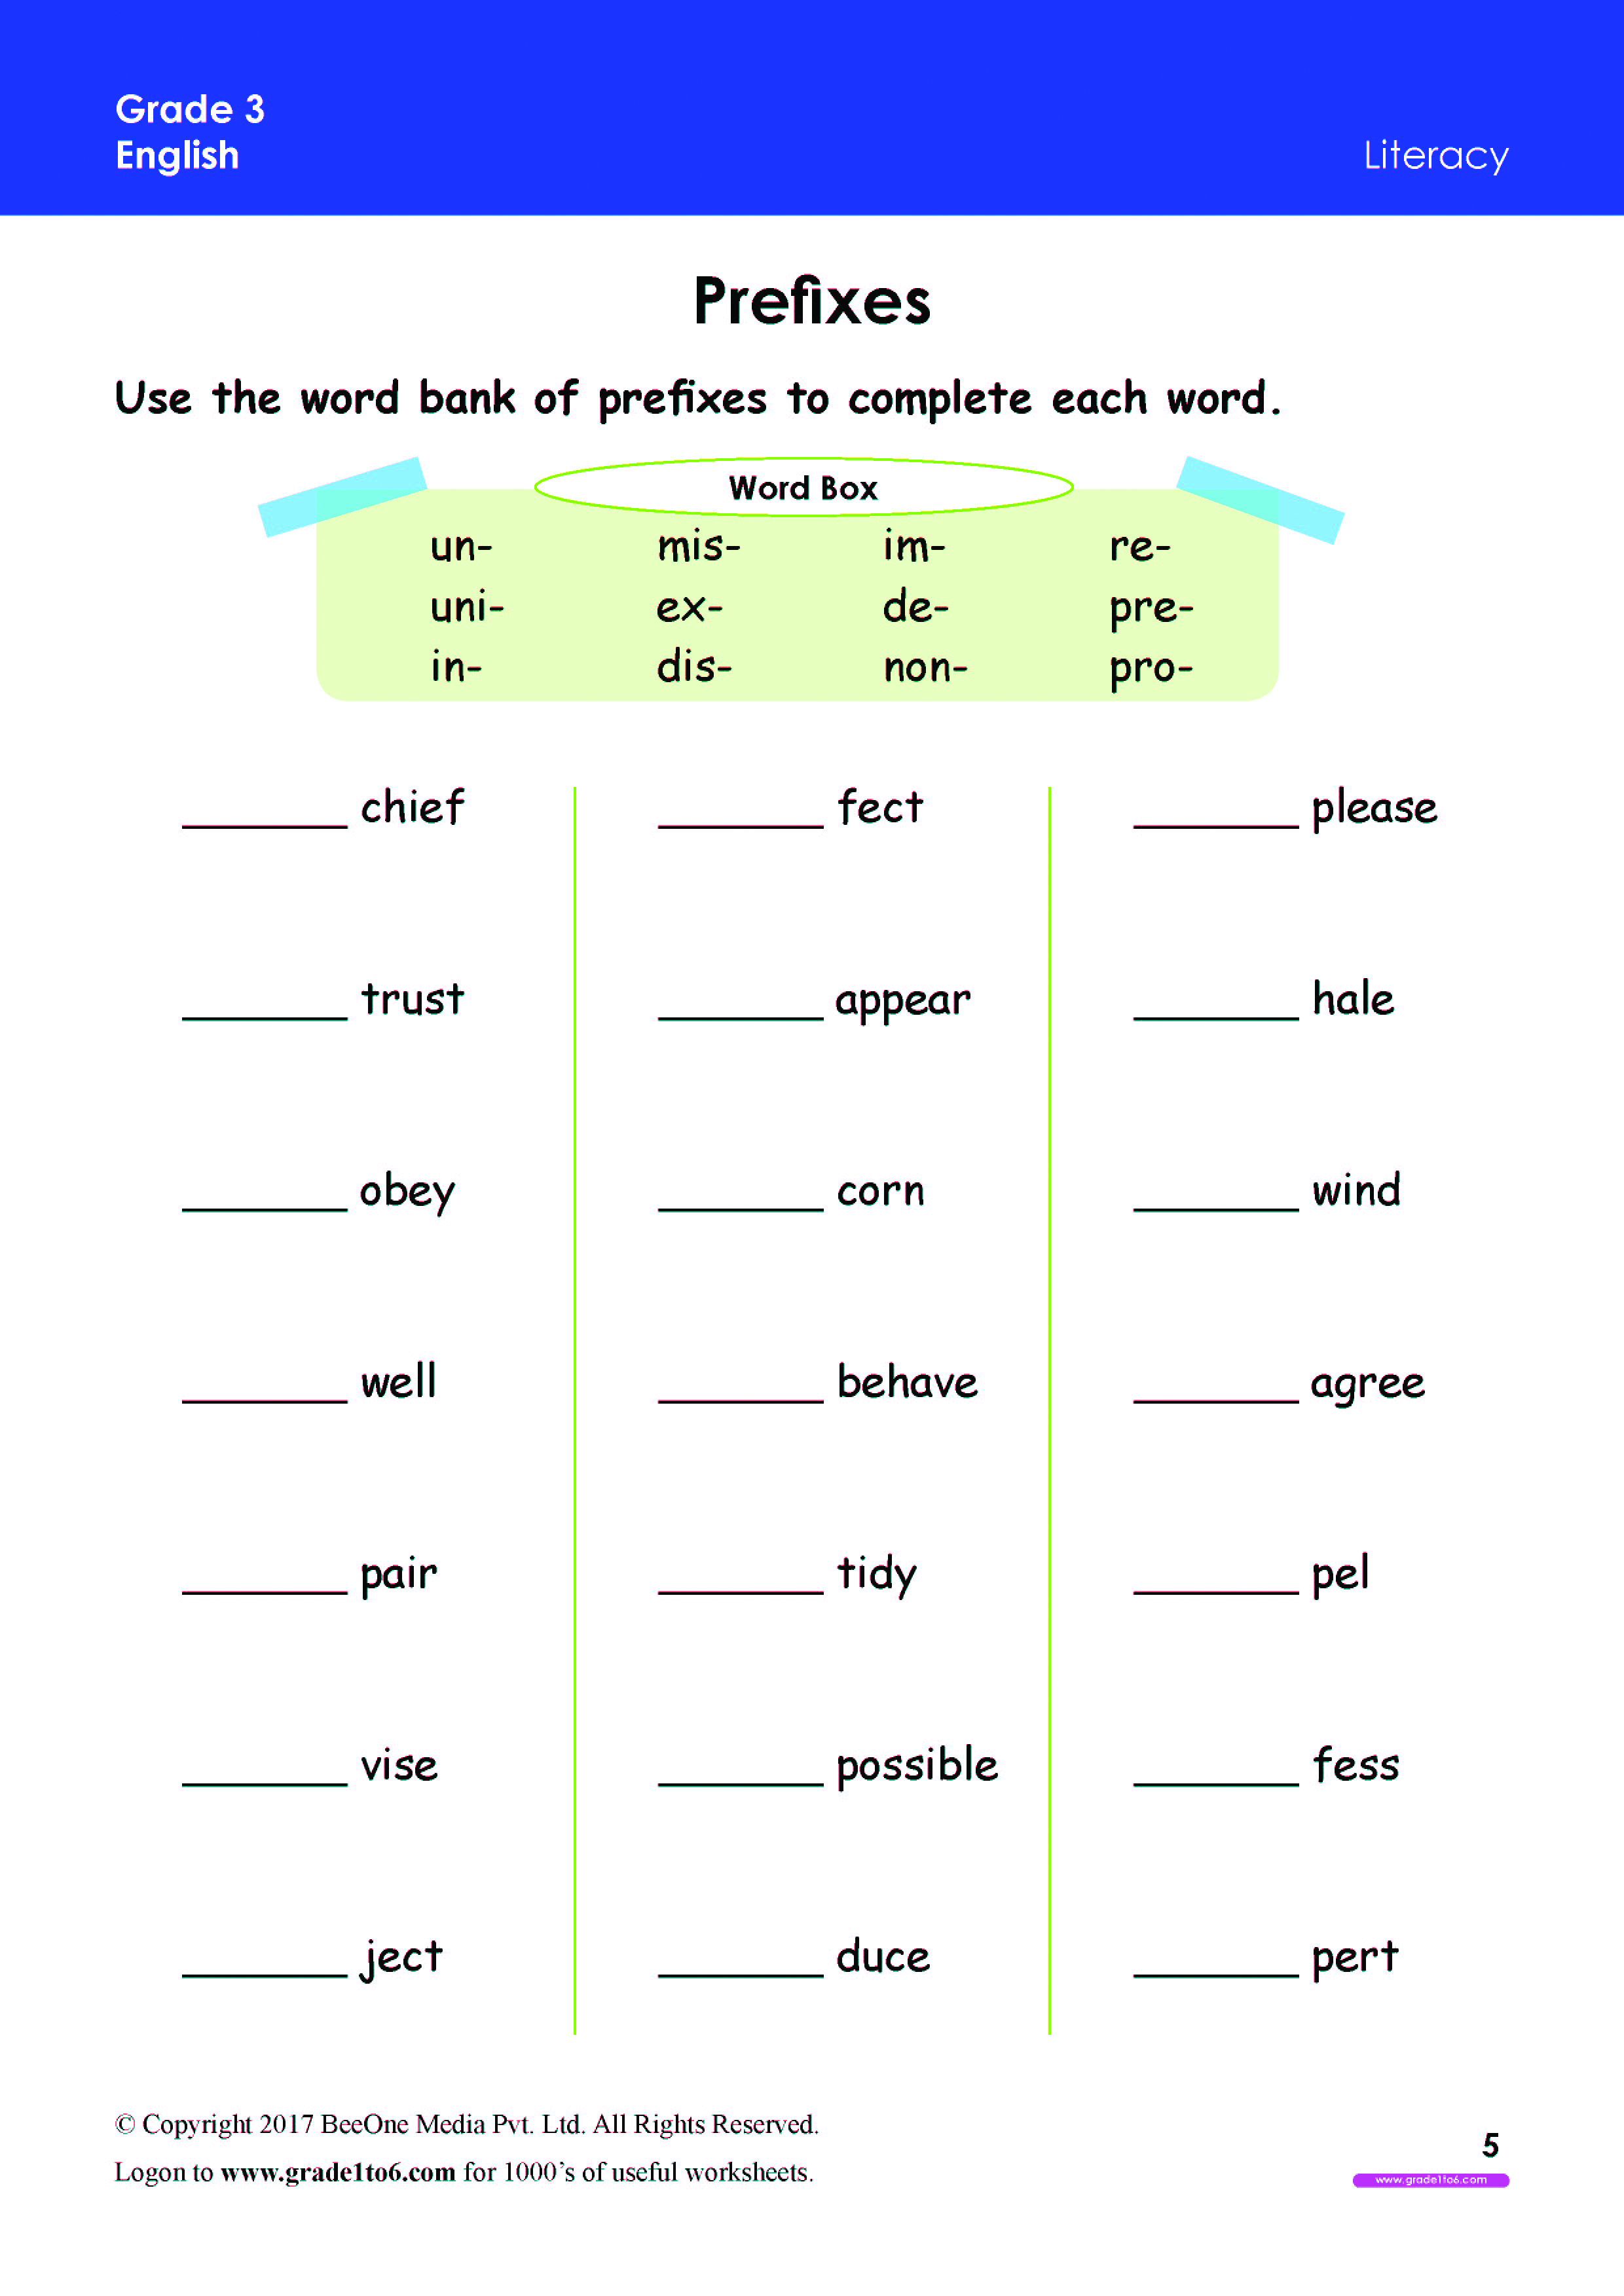 prefix-practice-worksheets